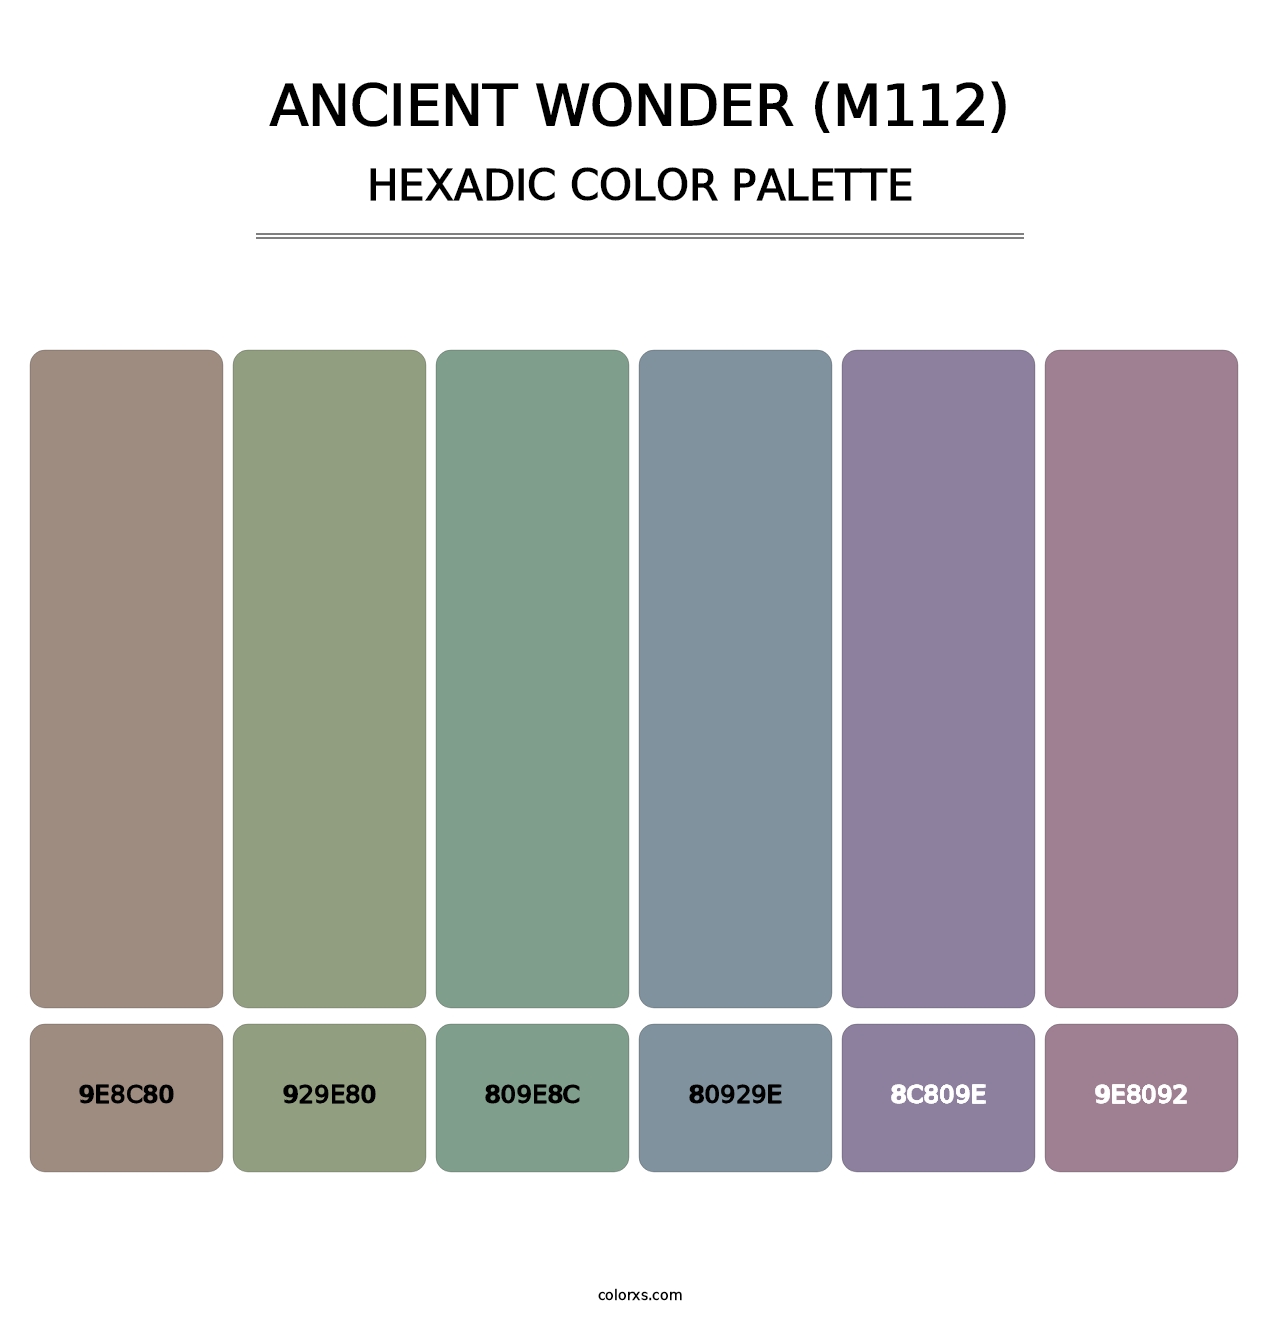 Ancient Wonder (M112) - Hexadic Color Palette